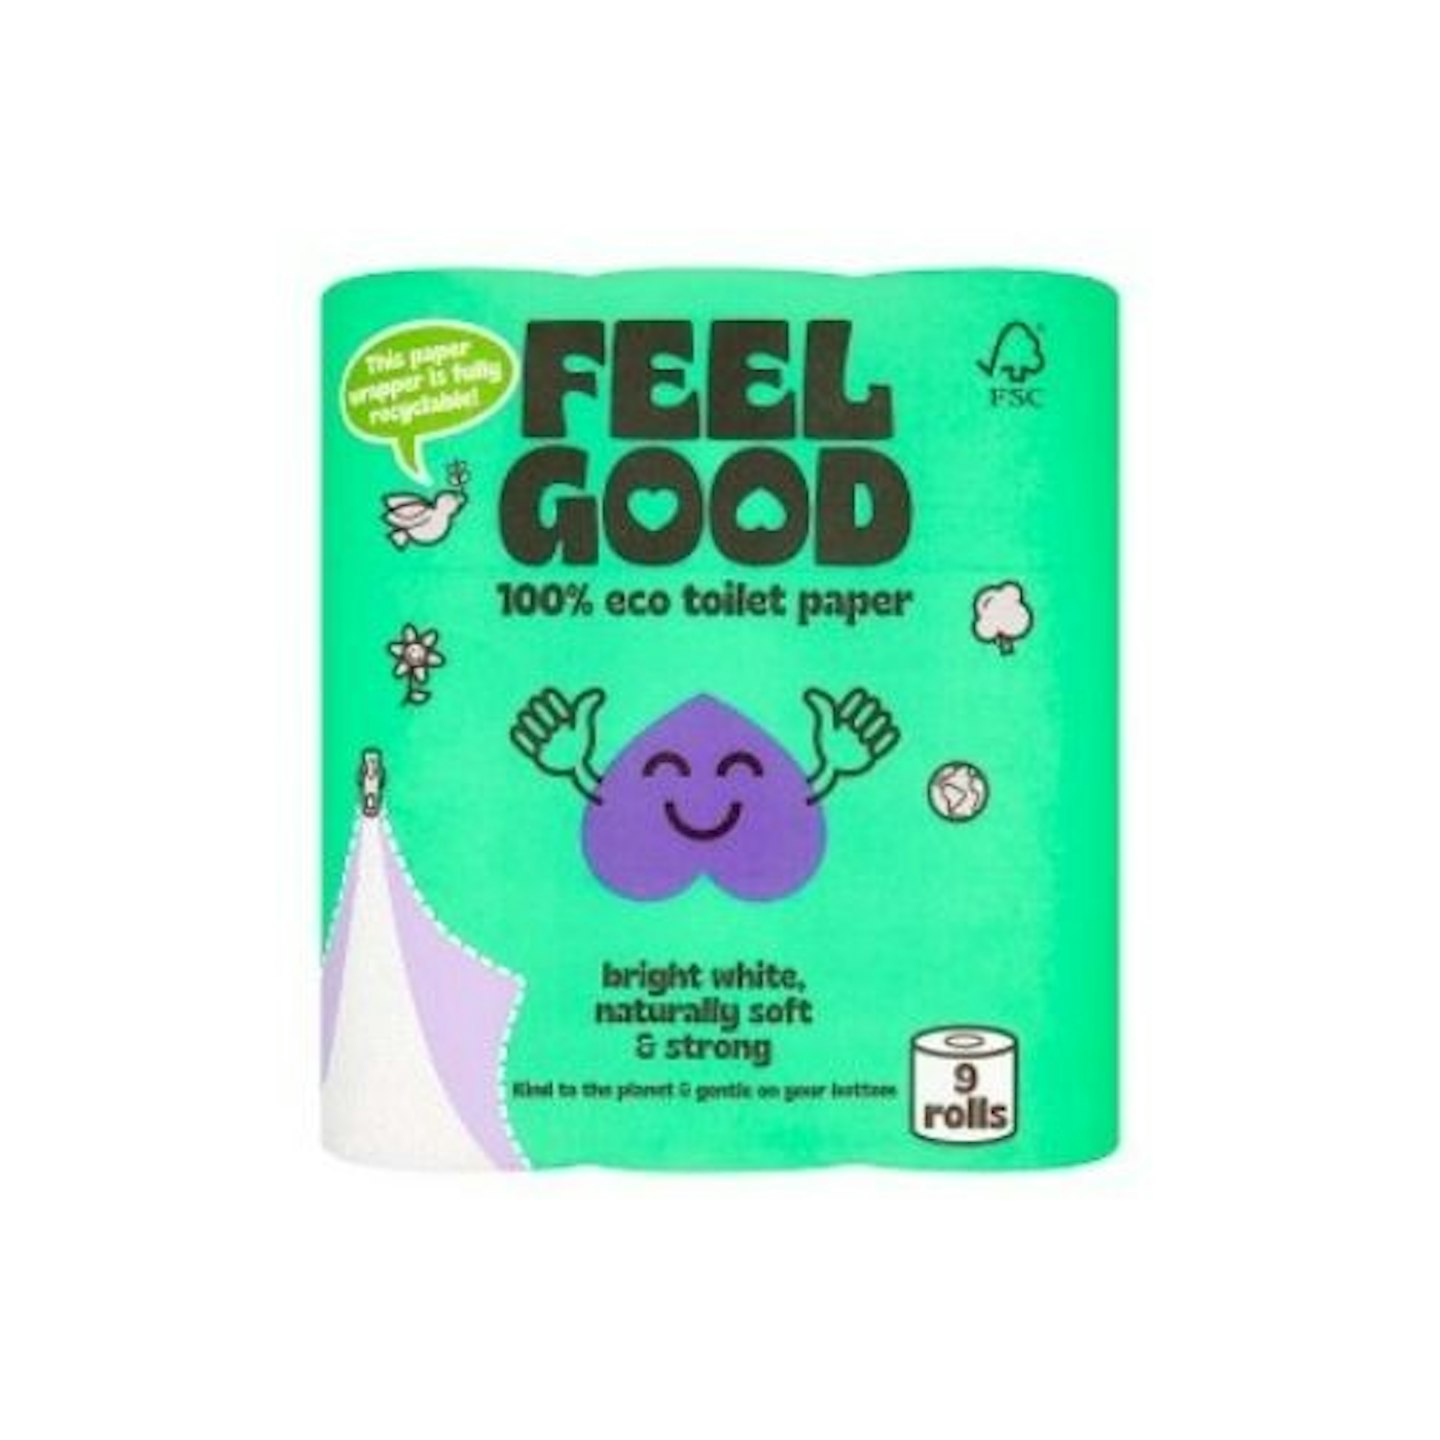 Feel Good Eco Toilet paper